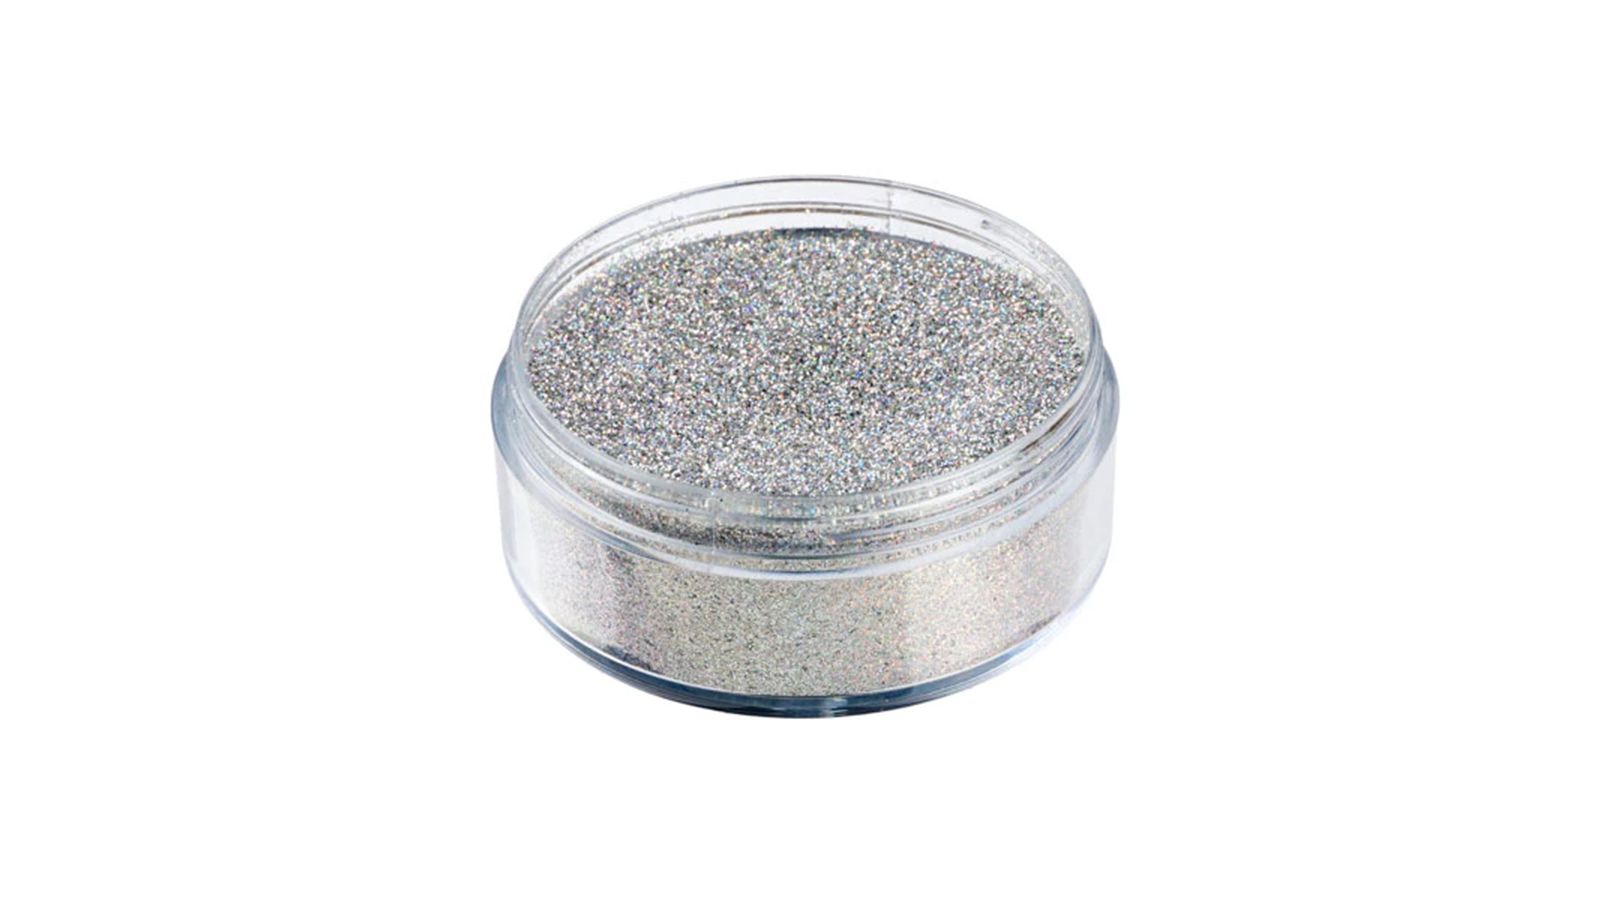 Chrome Silver Glitter Stars - Cosmetic grade glitter